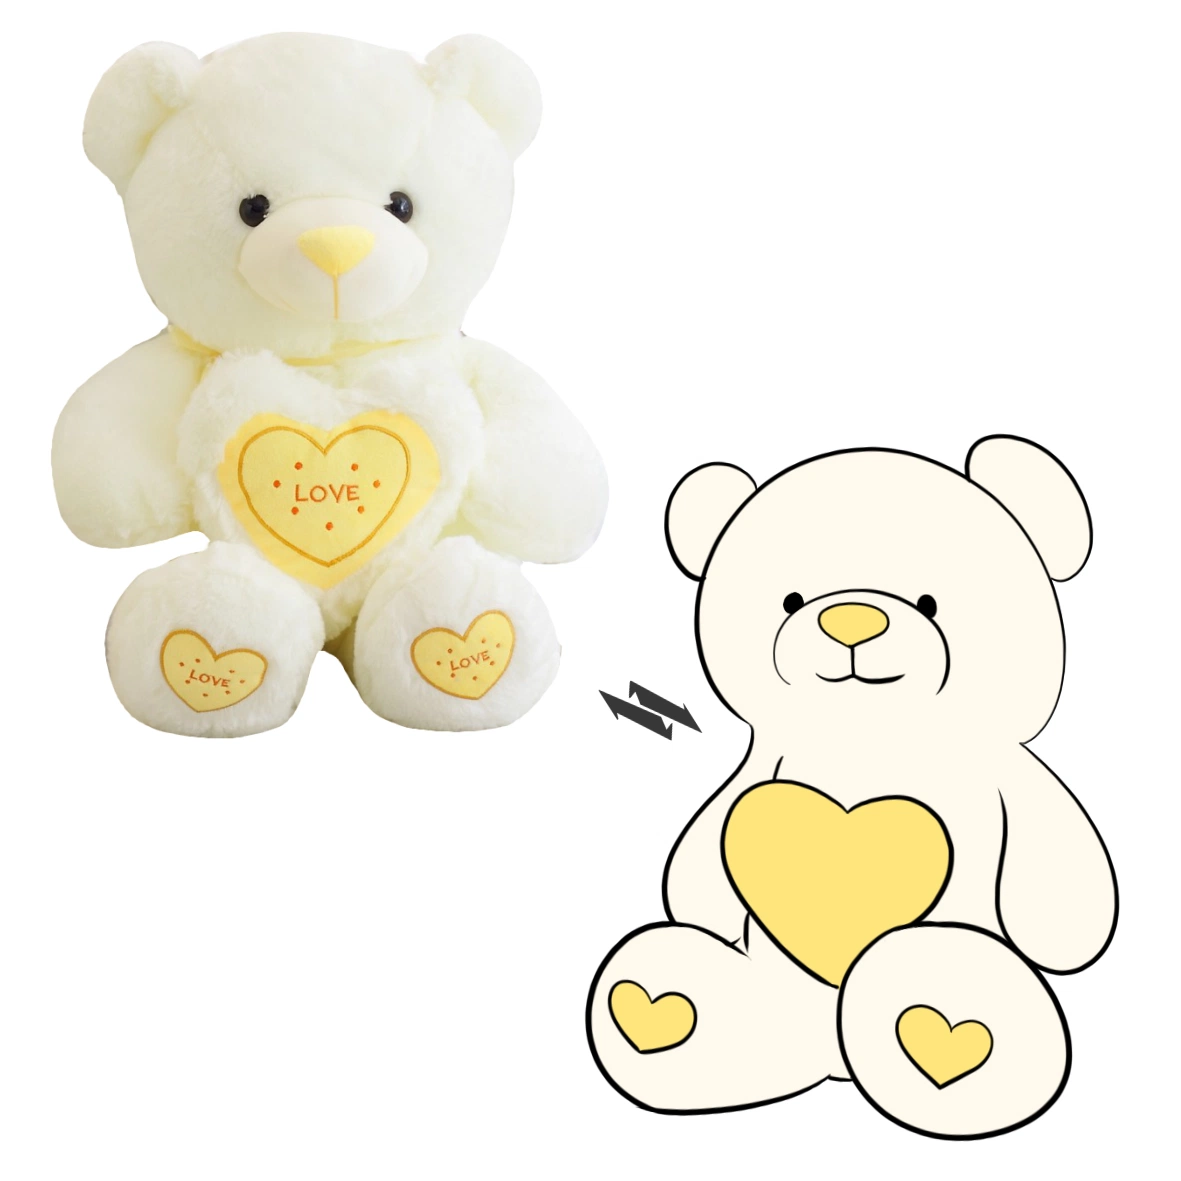 Caliente la venta de juguetes de peluche Peluche personalizado Ositos de peluche suave de San Valentín Corazón